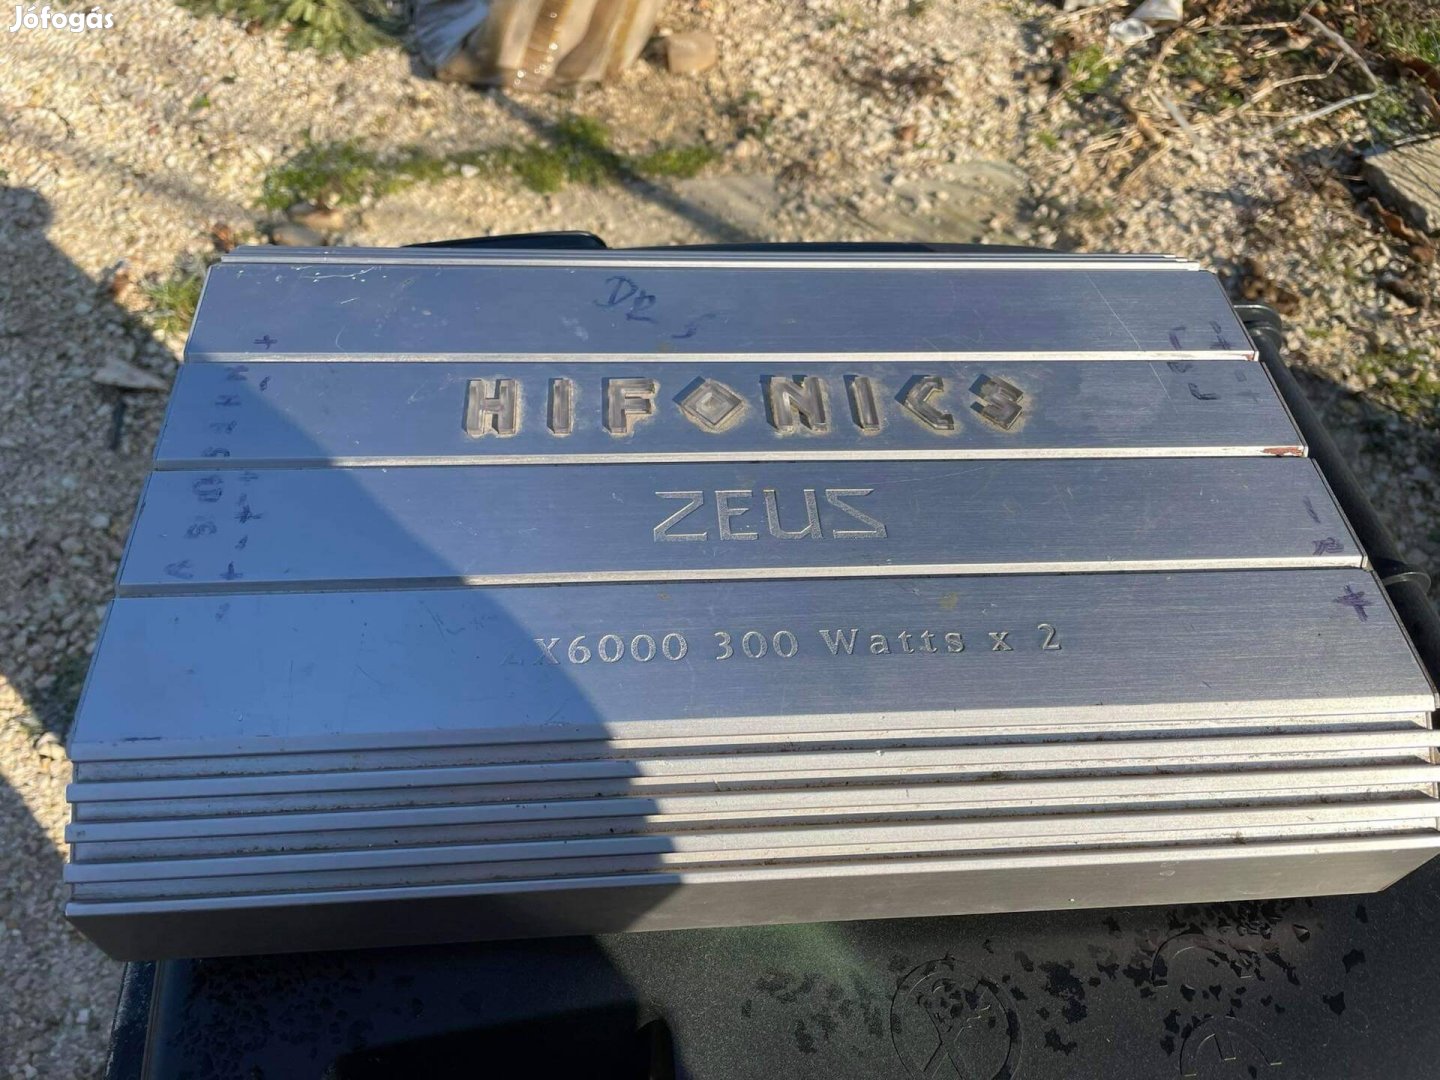 Hifonics zx6000